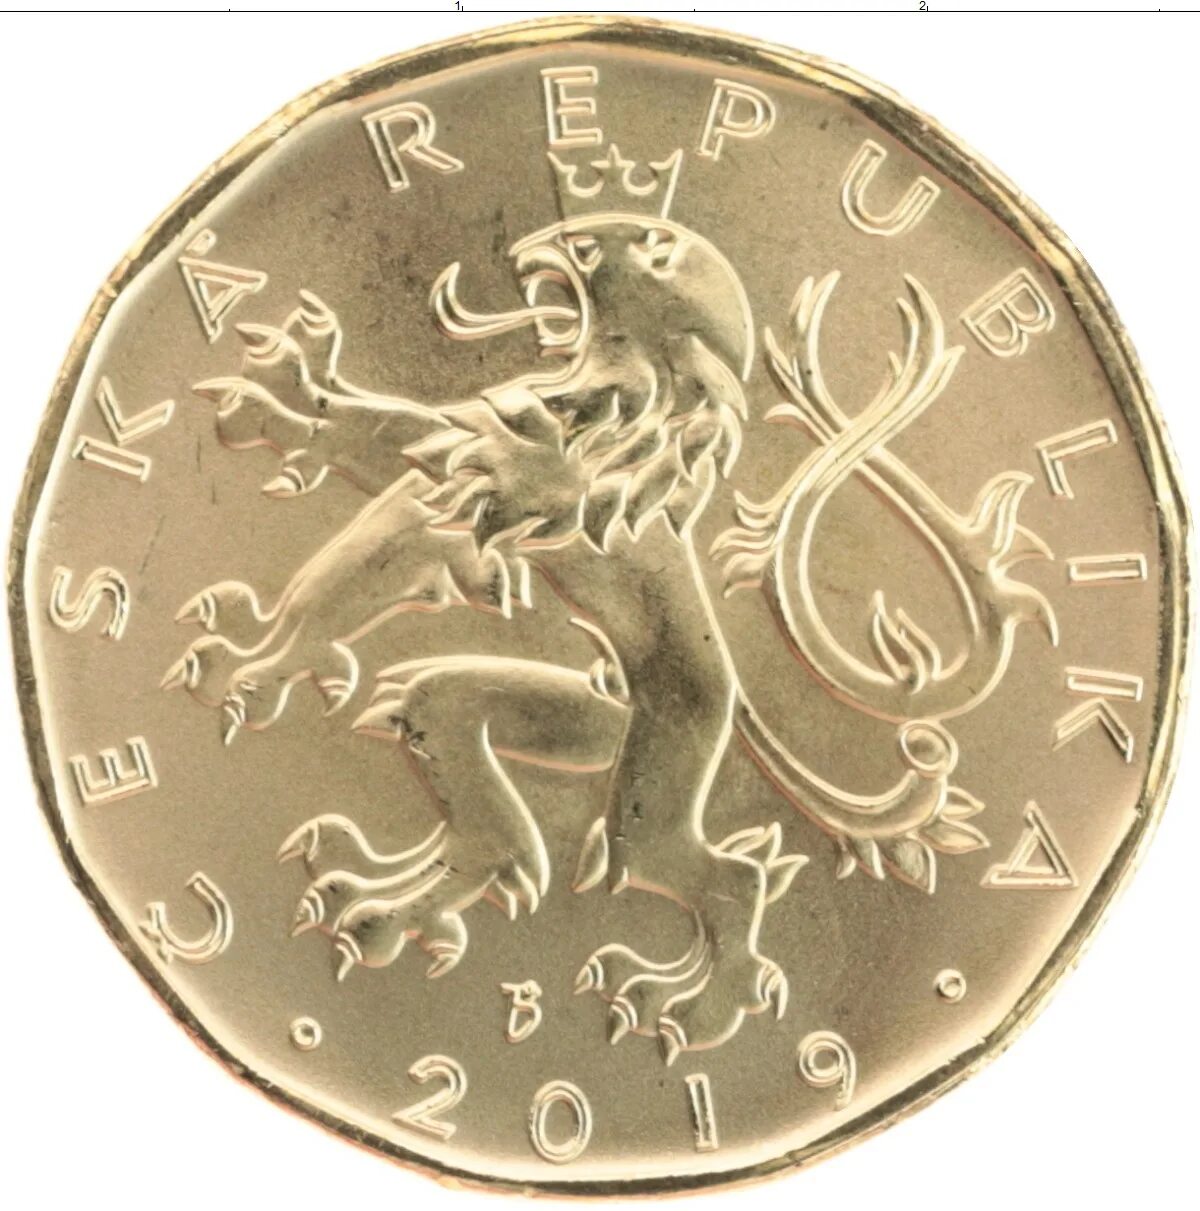 20 кронов в рублях. Чехия монета 20 крон. 20 Крон Чехия в рублях. Чешская монета 20 КС. 20 Крон Чехия 2002г магнитная.